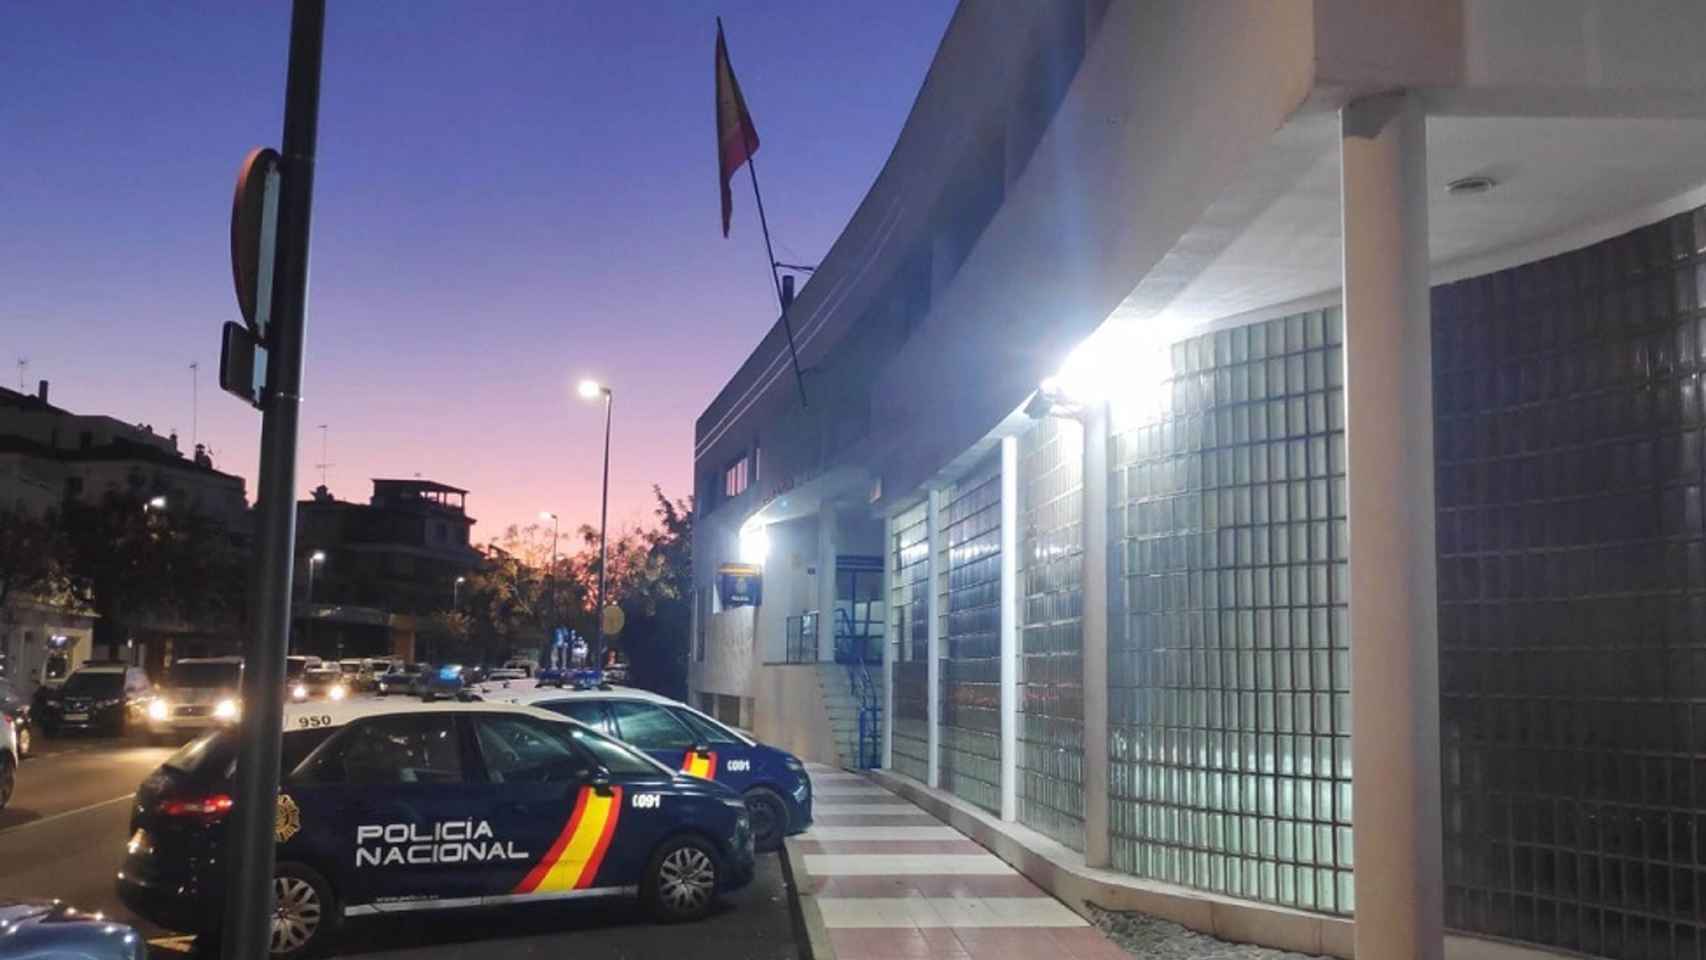 Comisaría de la Policía Nacional de Marbella (Málaga).